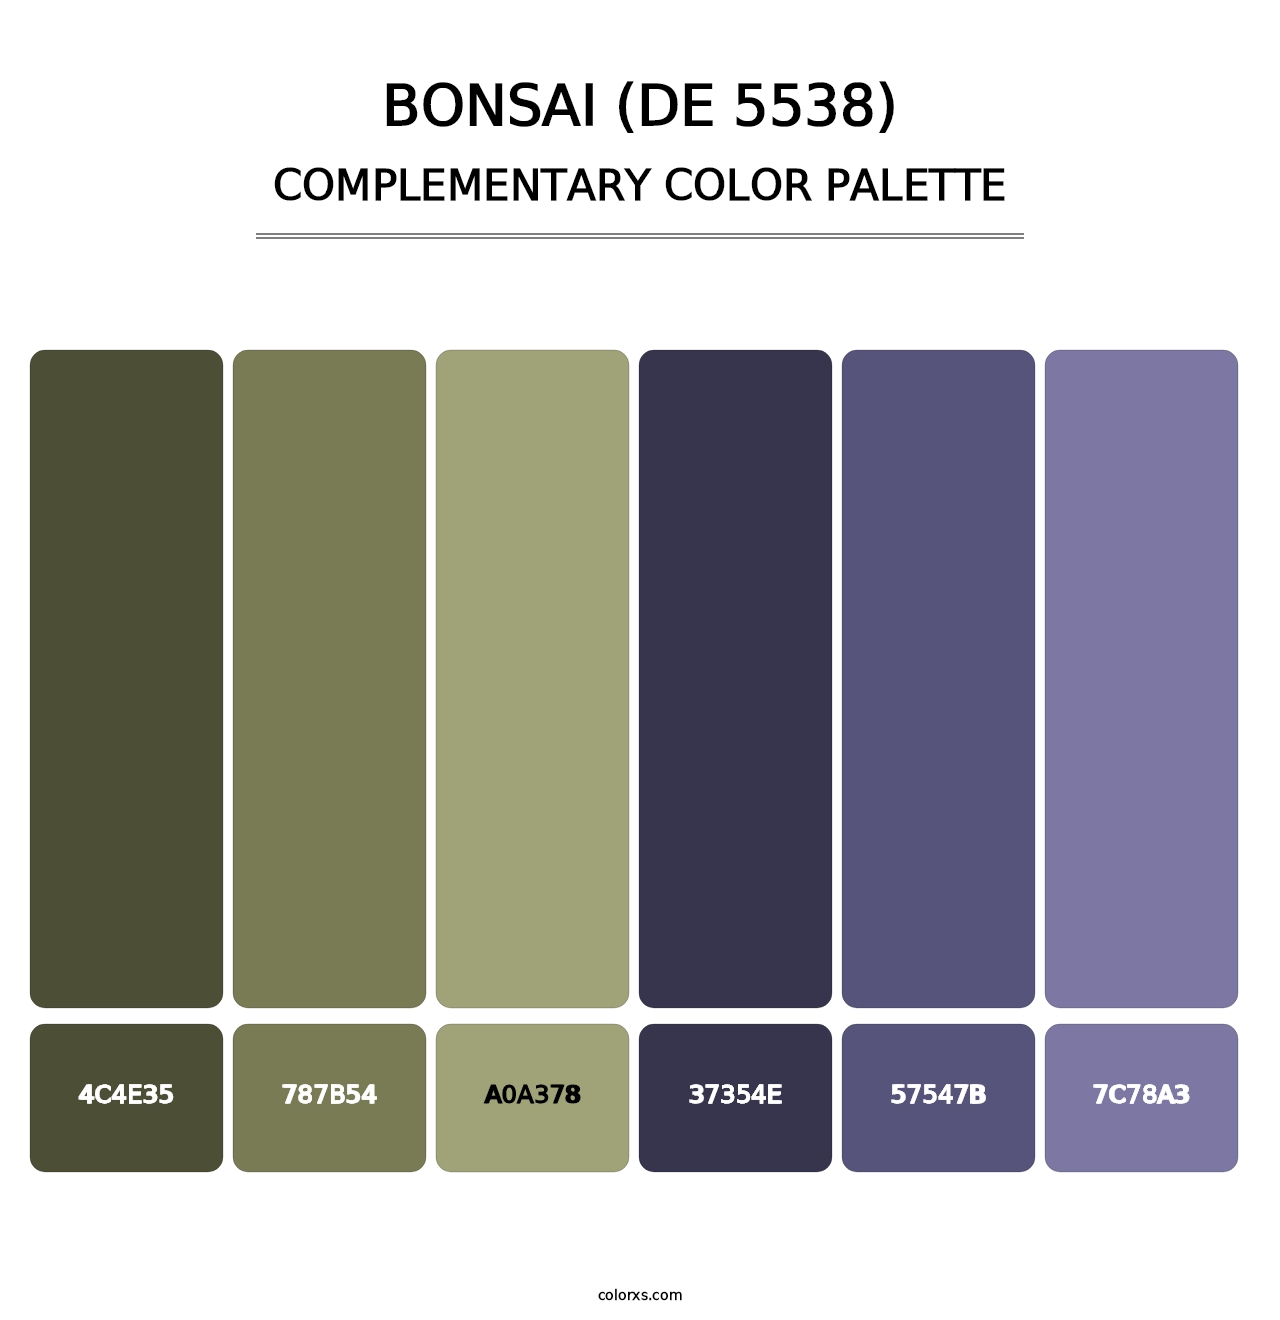 Bonsai (DE 5538) - Complementary Color Palette